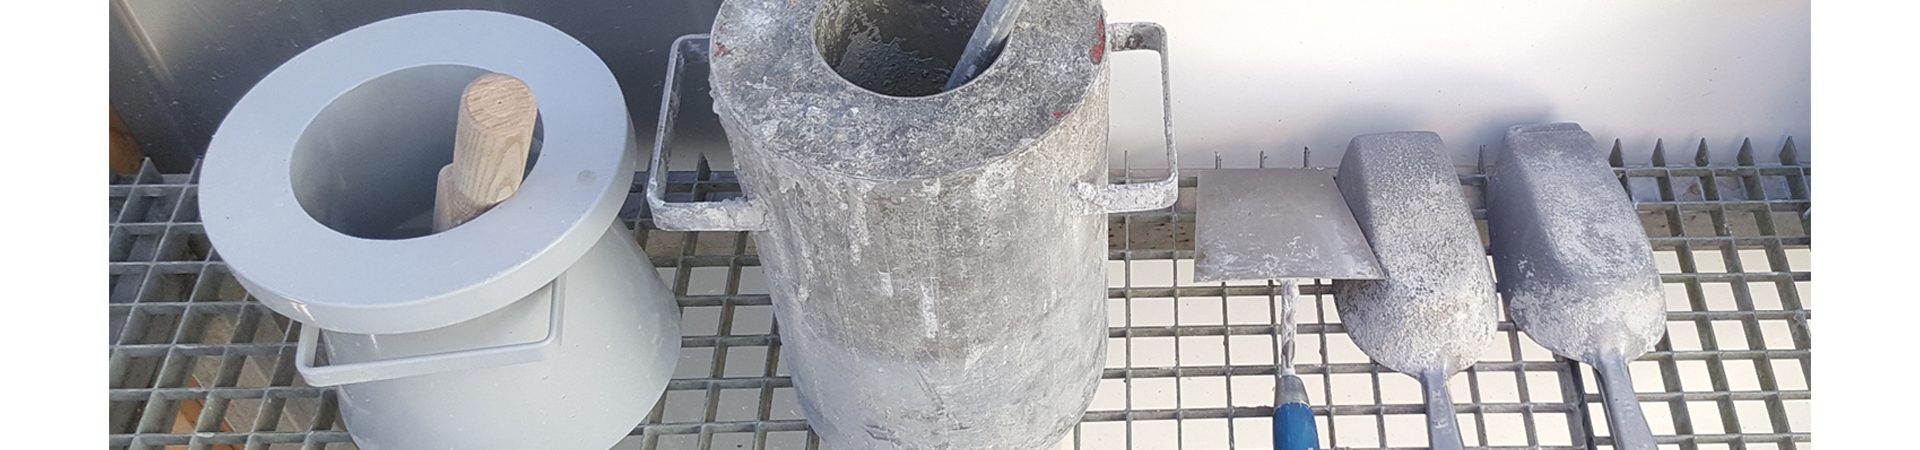 LBC gereedschap beton bewerking